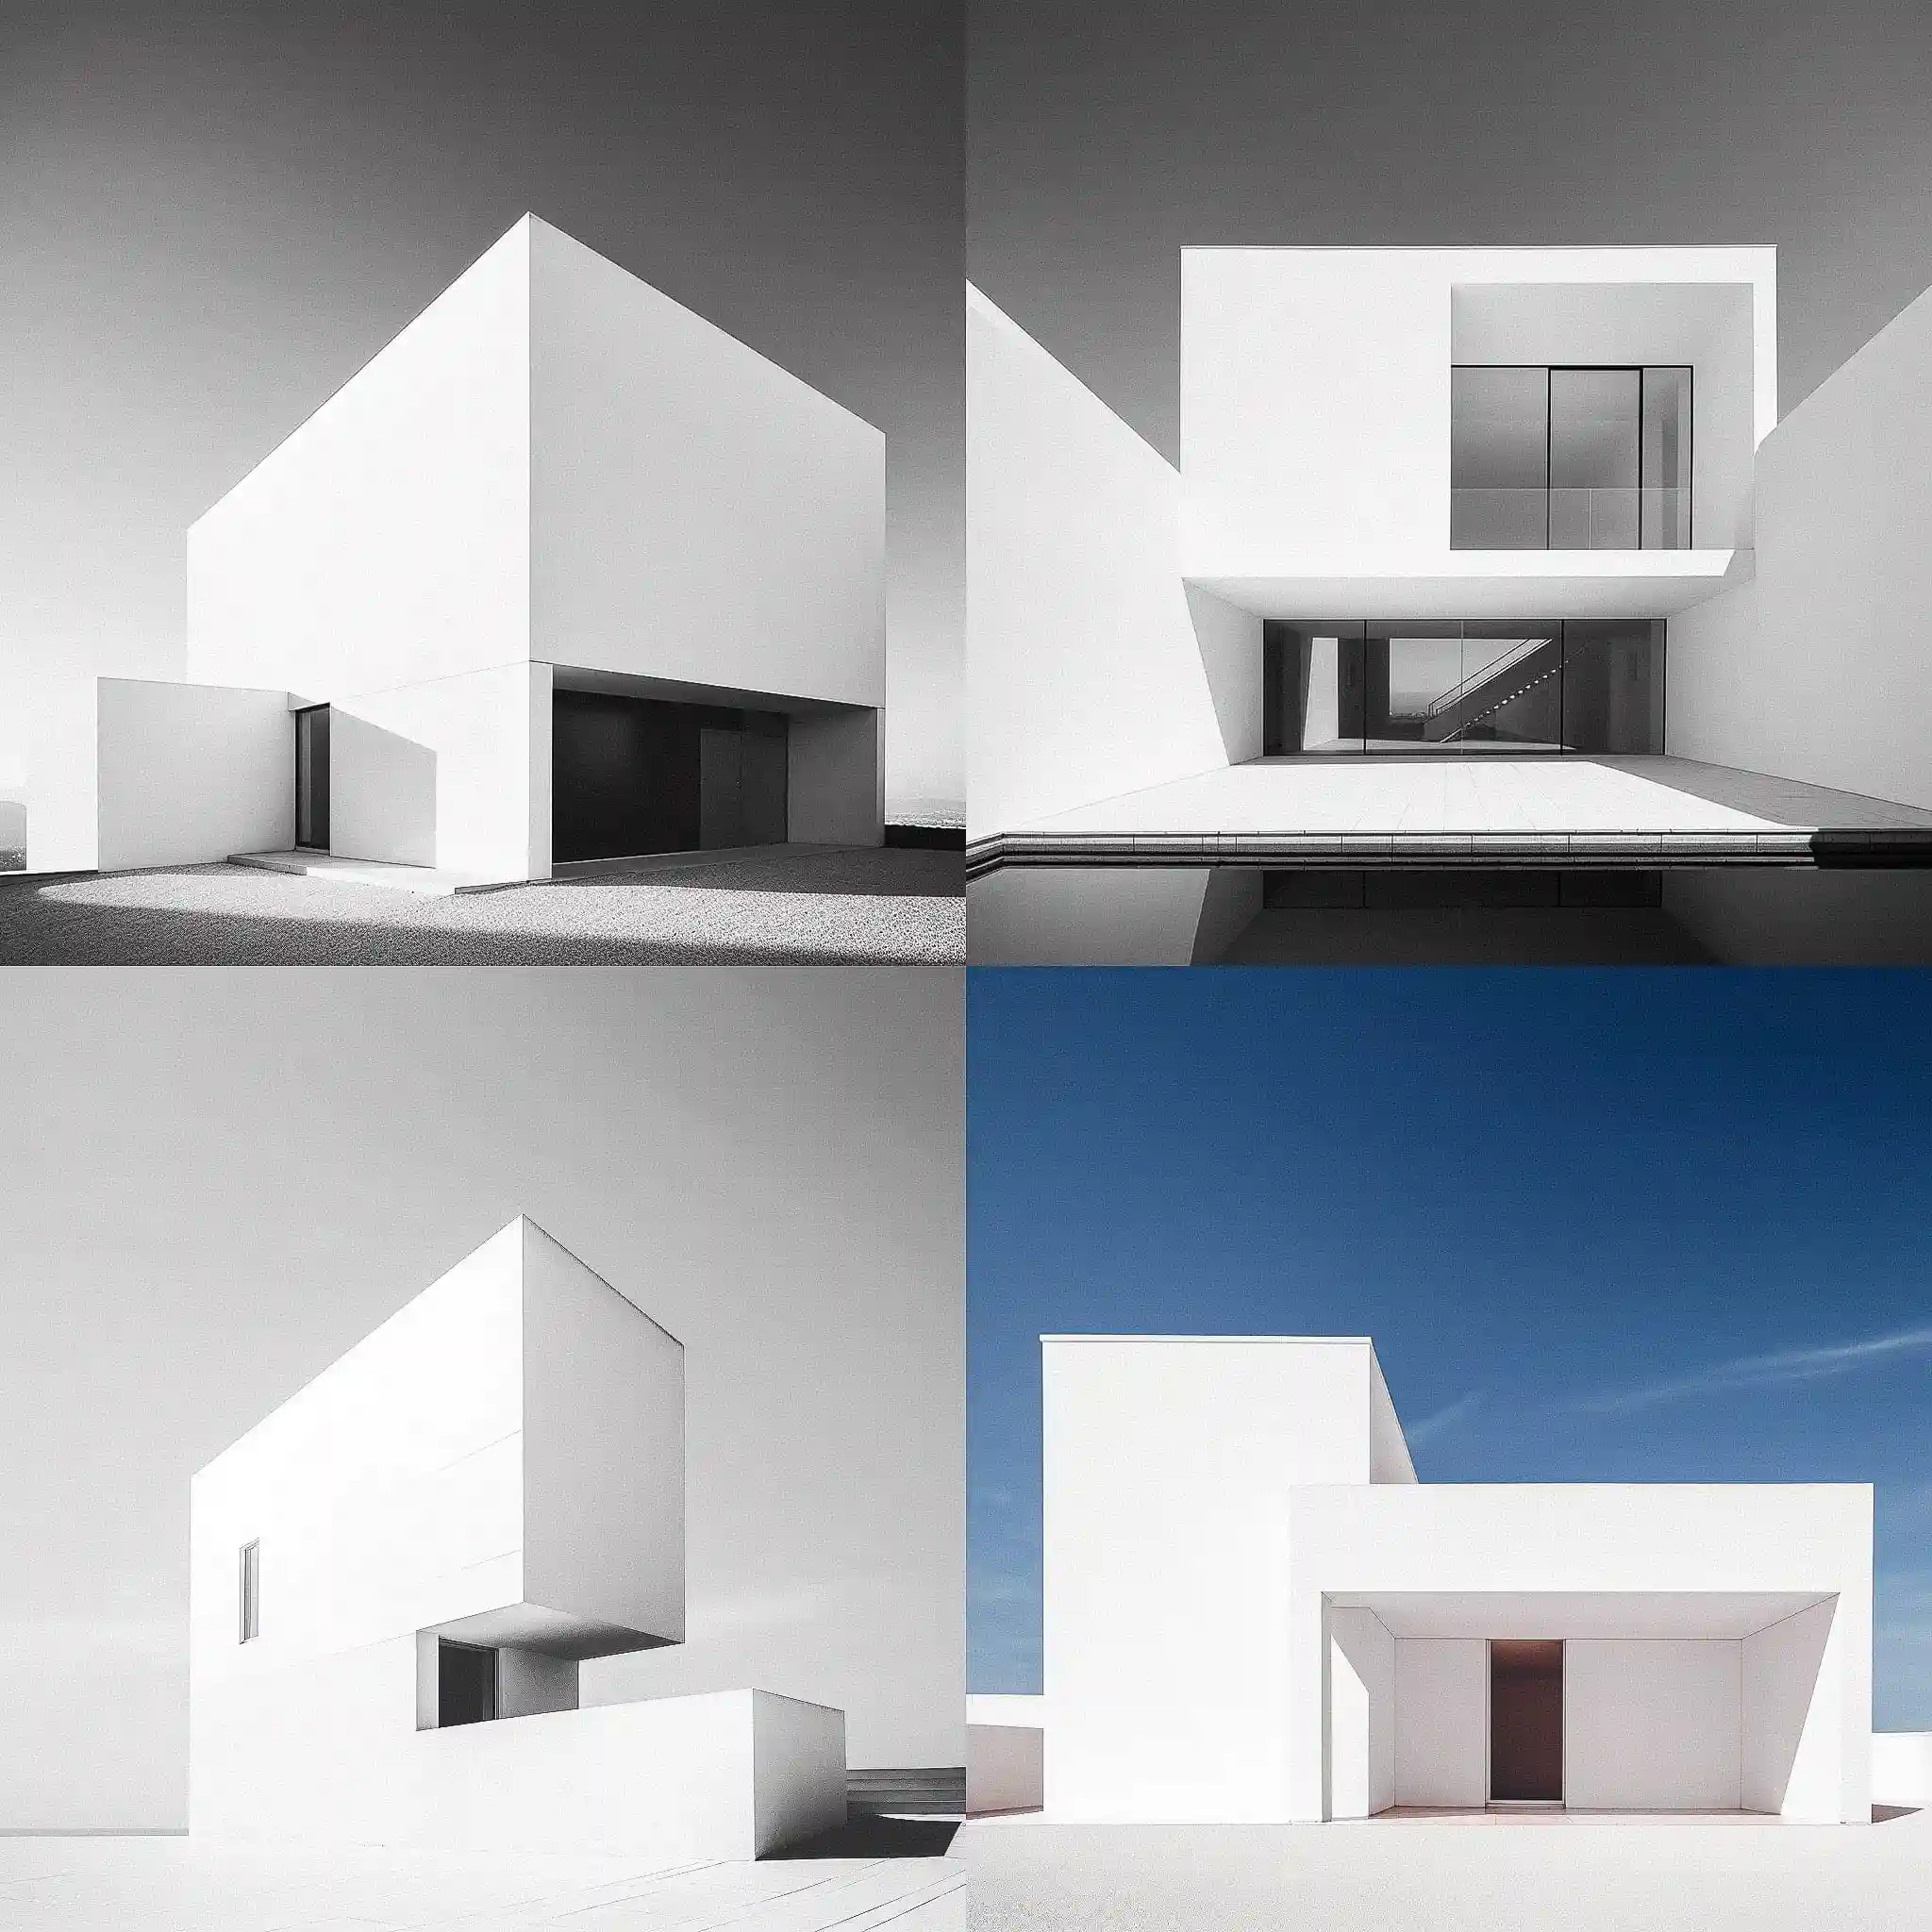 -极简主义建筑 minimalist architecture风格midjourney AI绘画作品